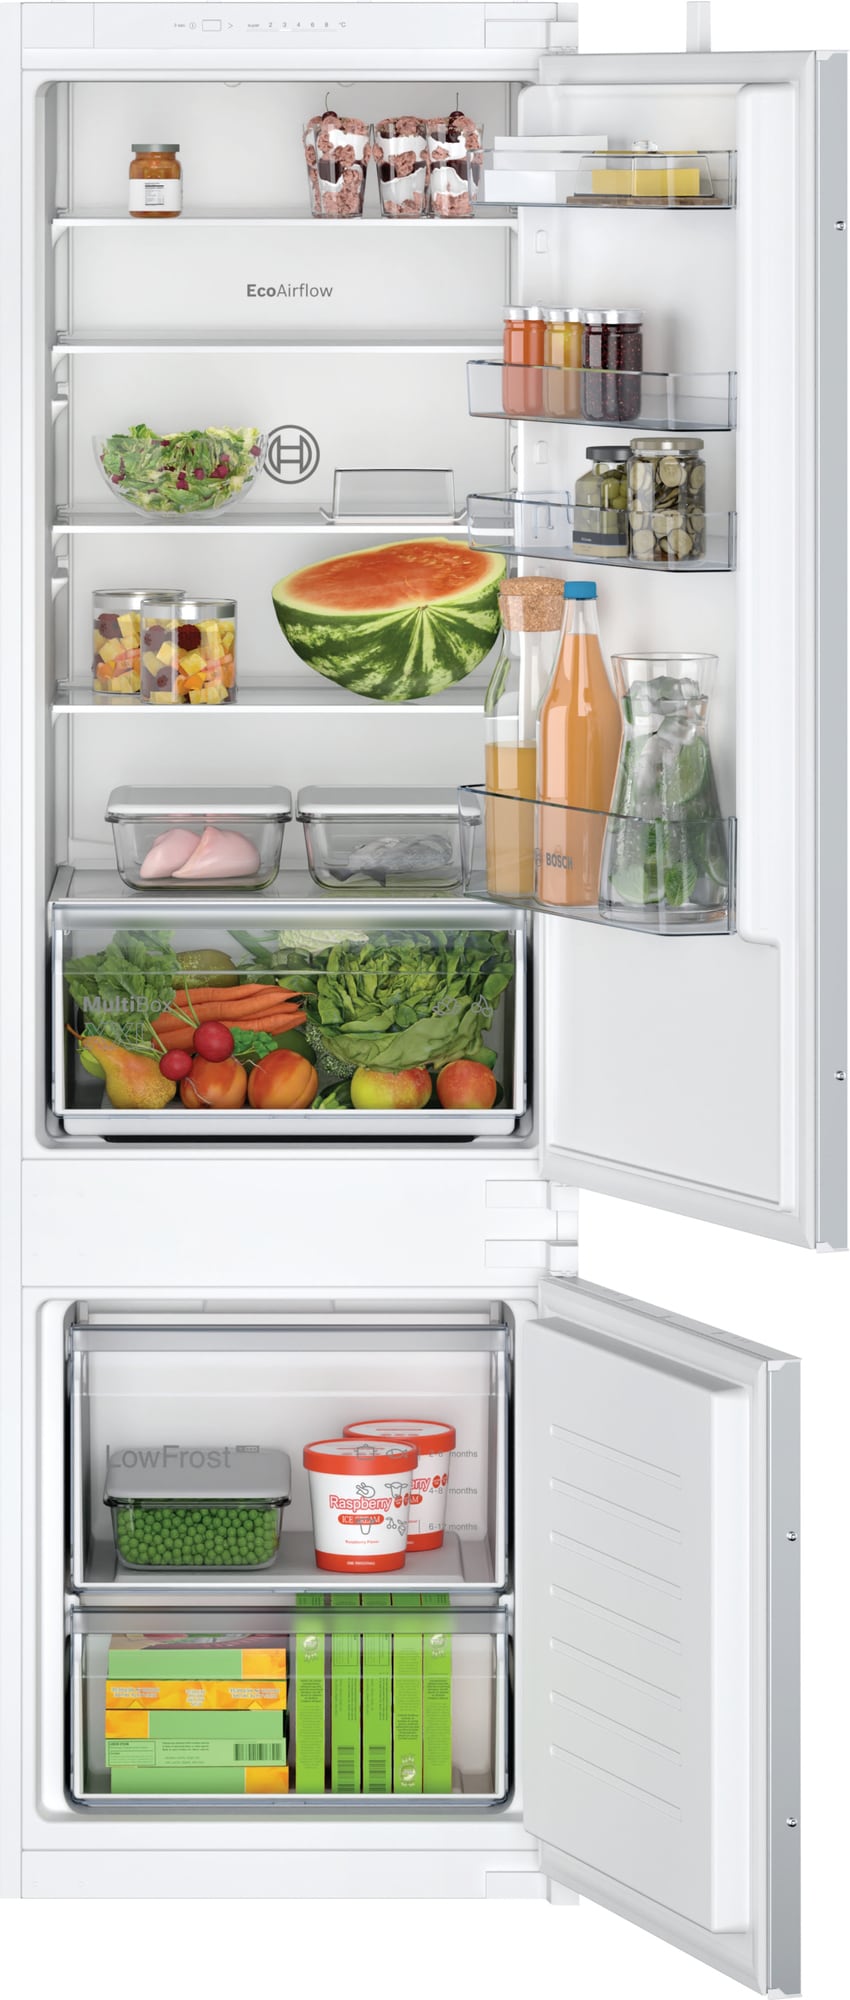 Køleskab tilbud - køb et billigt køleskab her - stort udvalg 2023